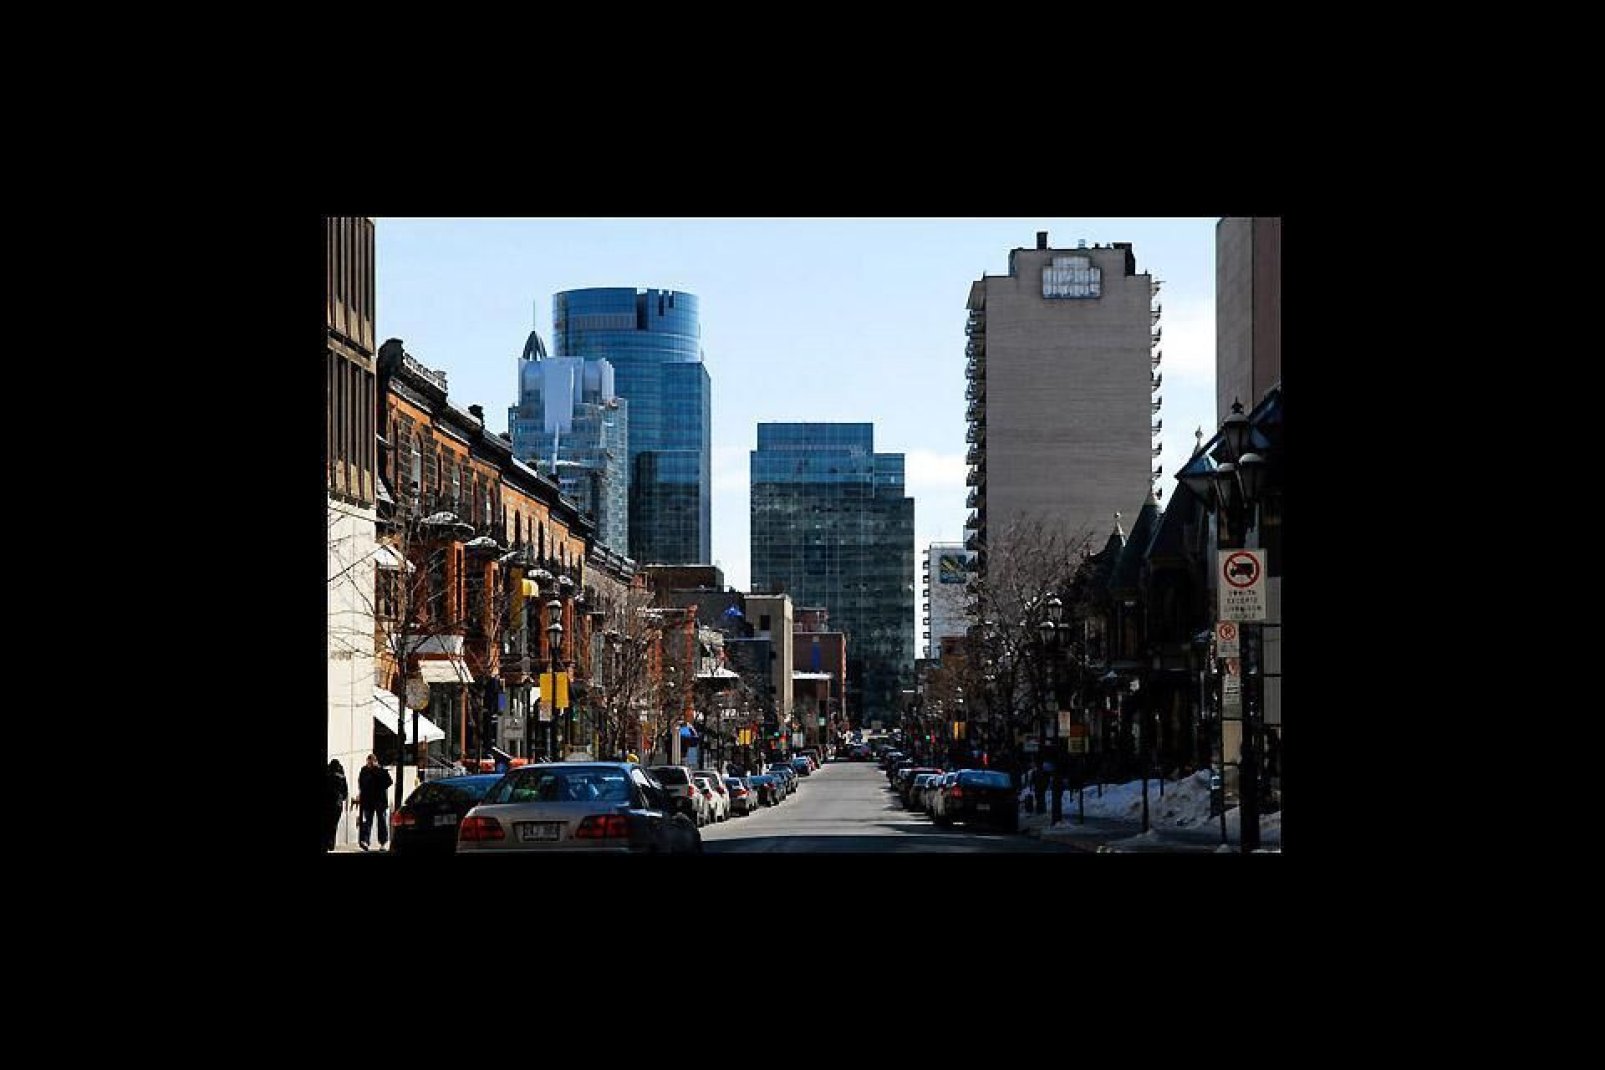 Pôle économique de la région de Québec, Montréal est la seconde plus grande ville du Canada (après Toronto